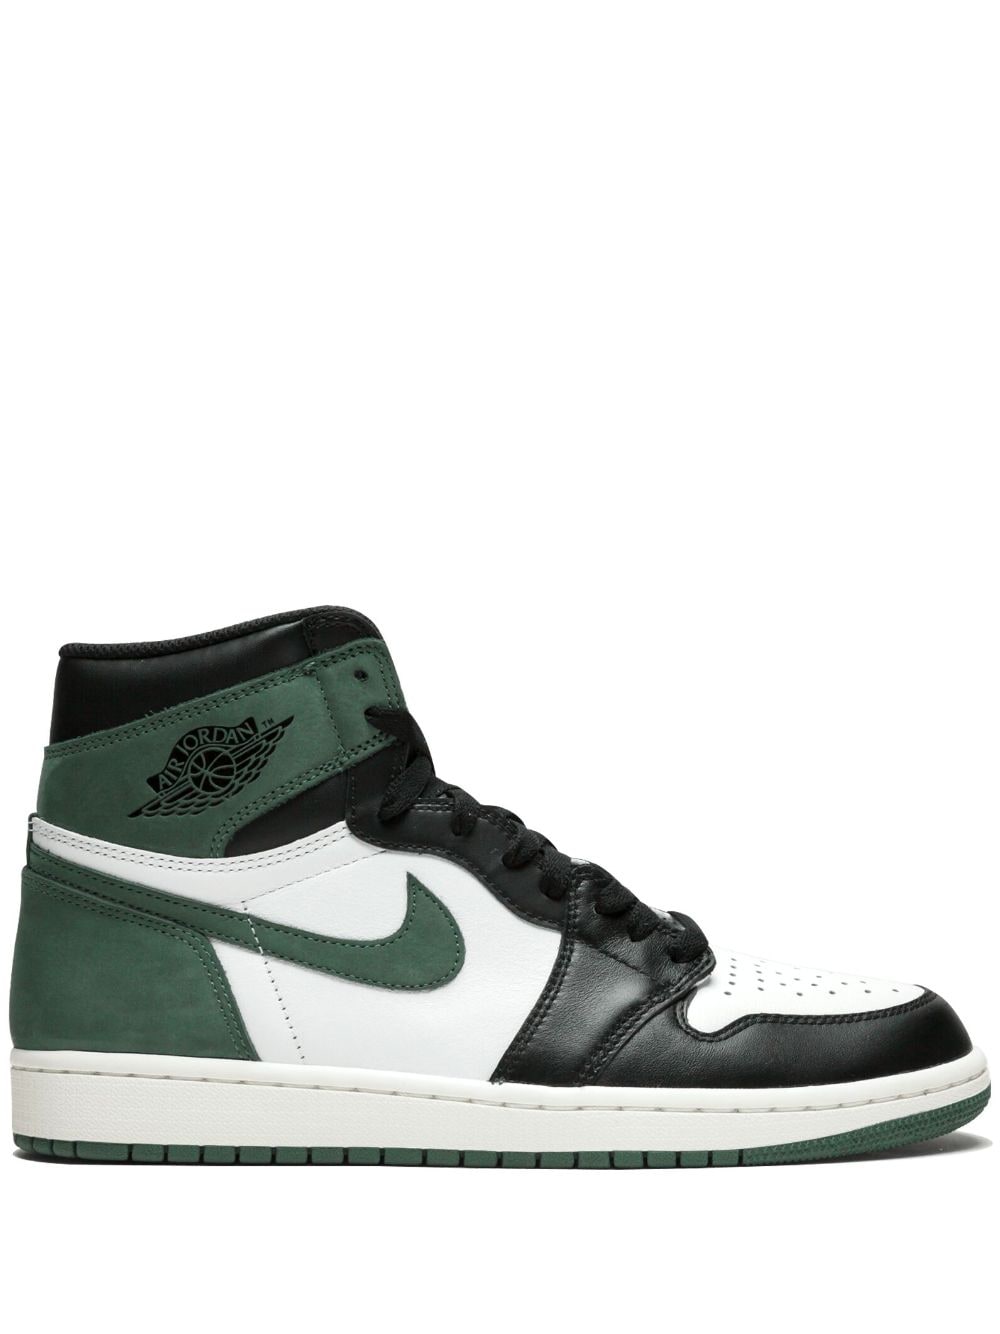 Jordan Air Jordan 1 Retro High OG "Clay Green" sneakers von Jordan